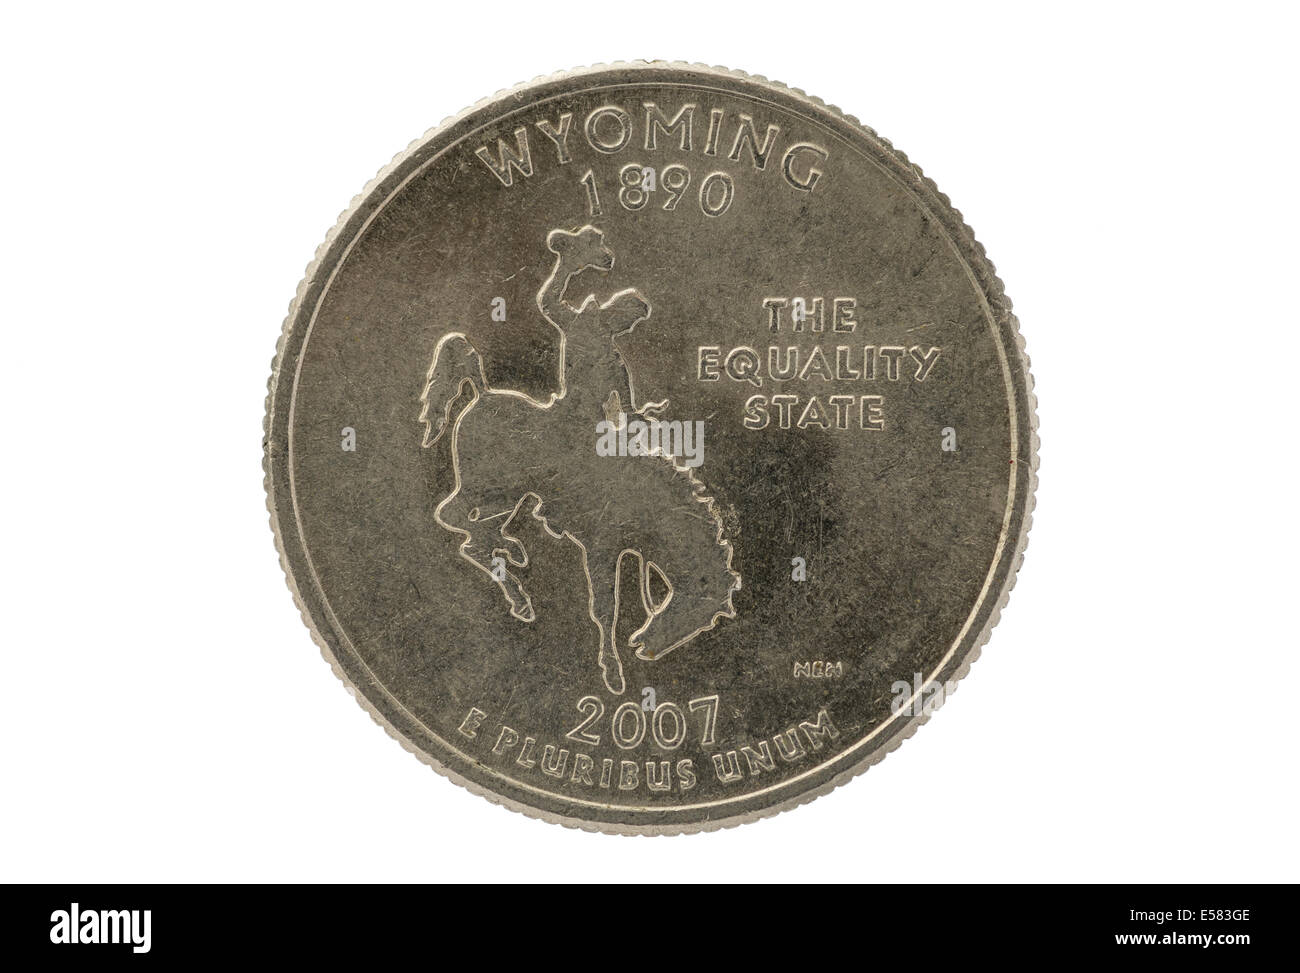 Wyoming state trimestre commémorative coin isolé sur fond blanc Banque D'Images